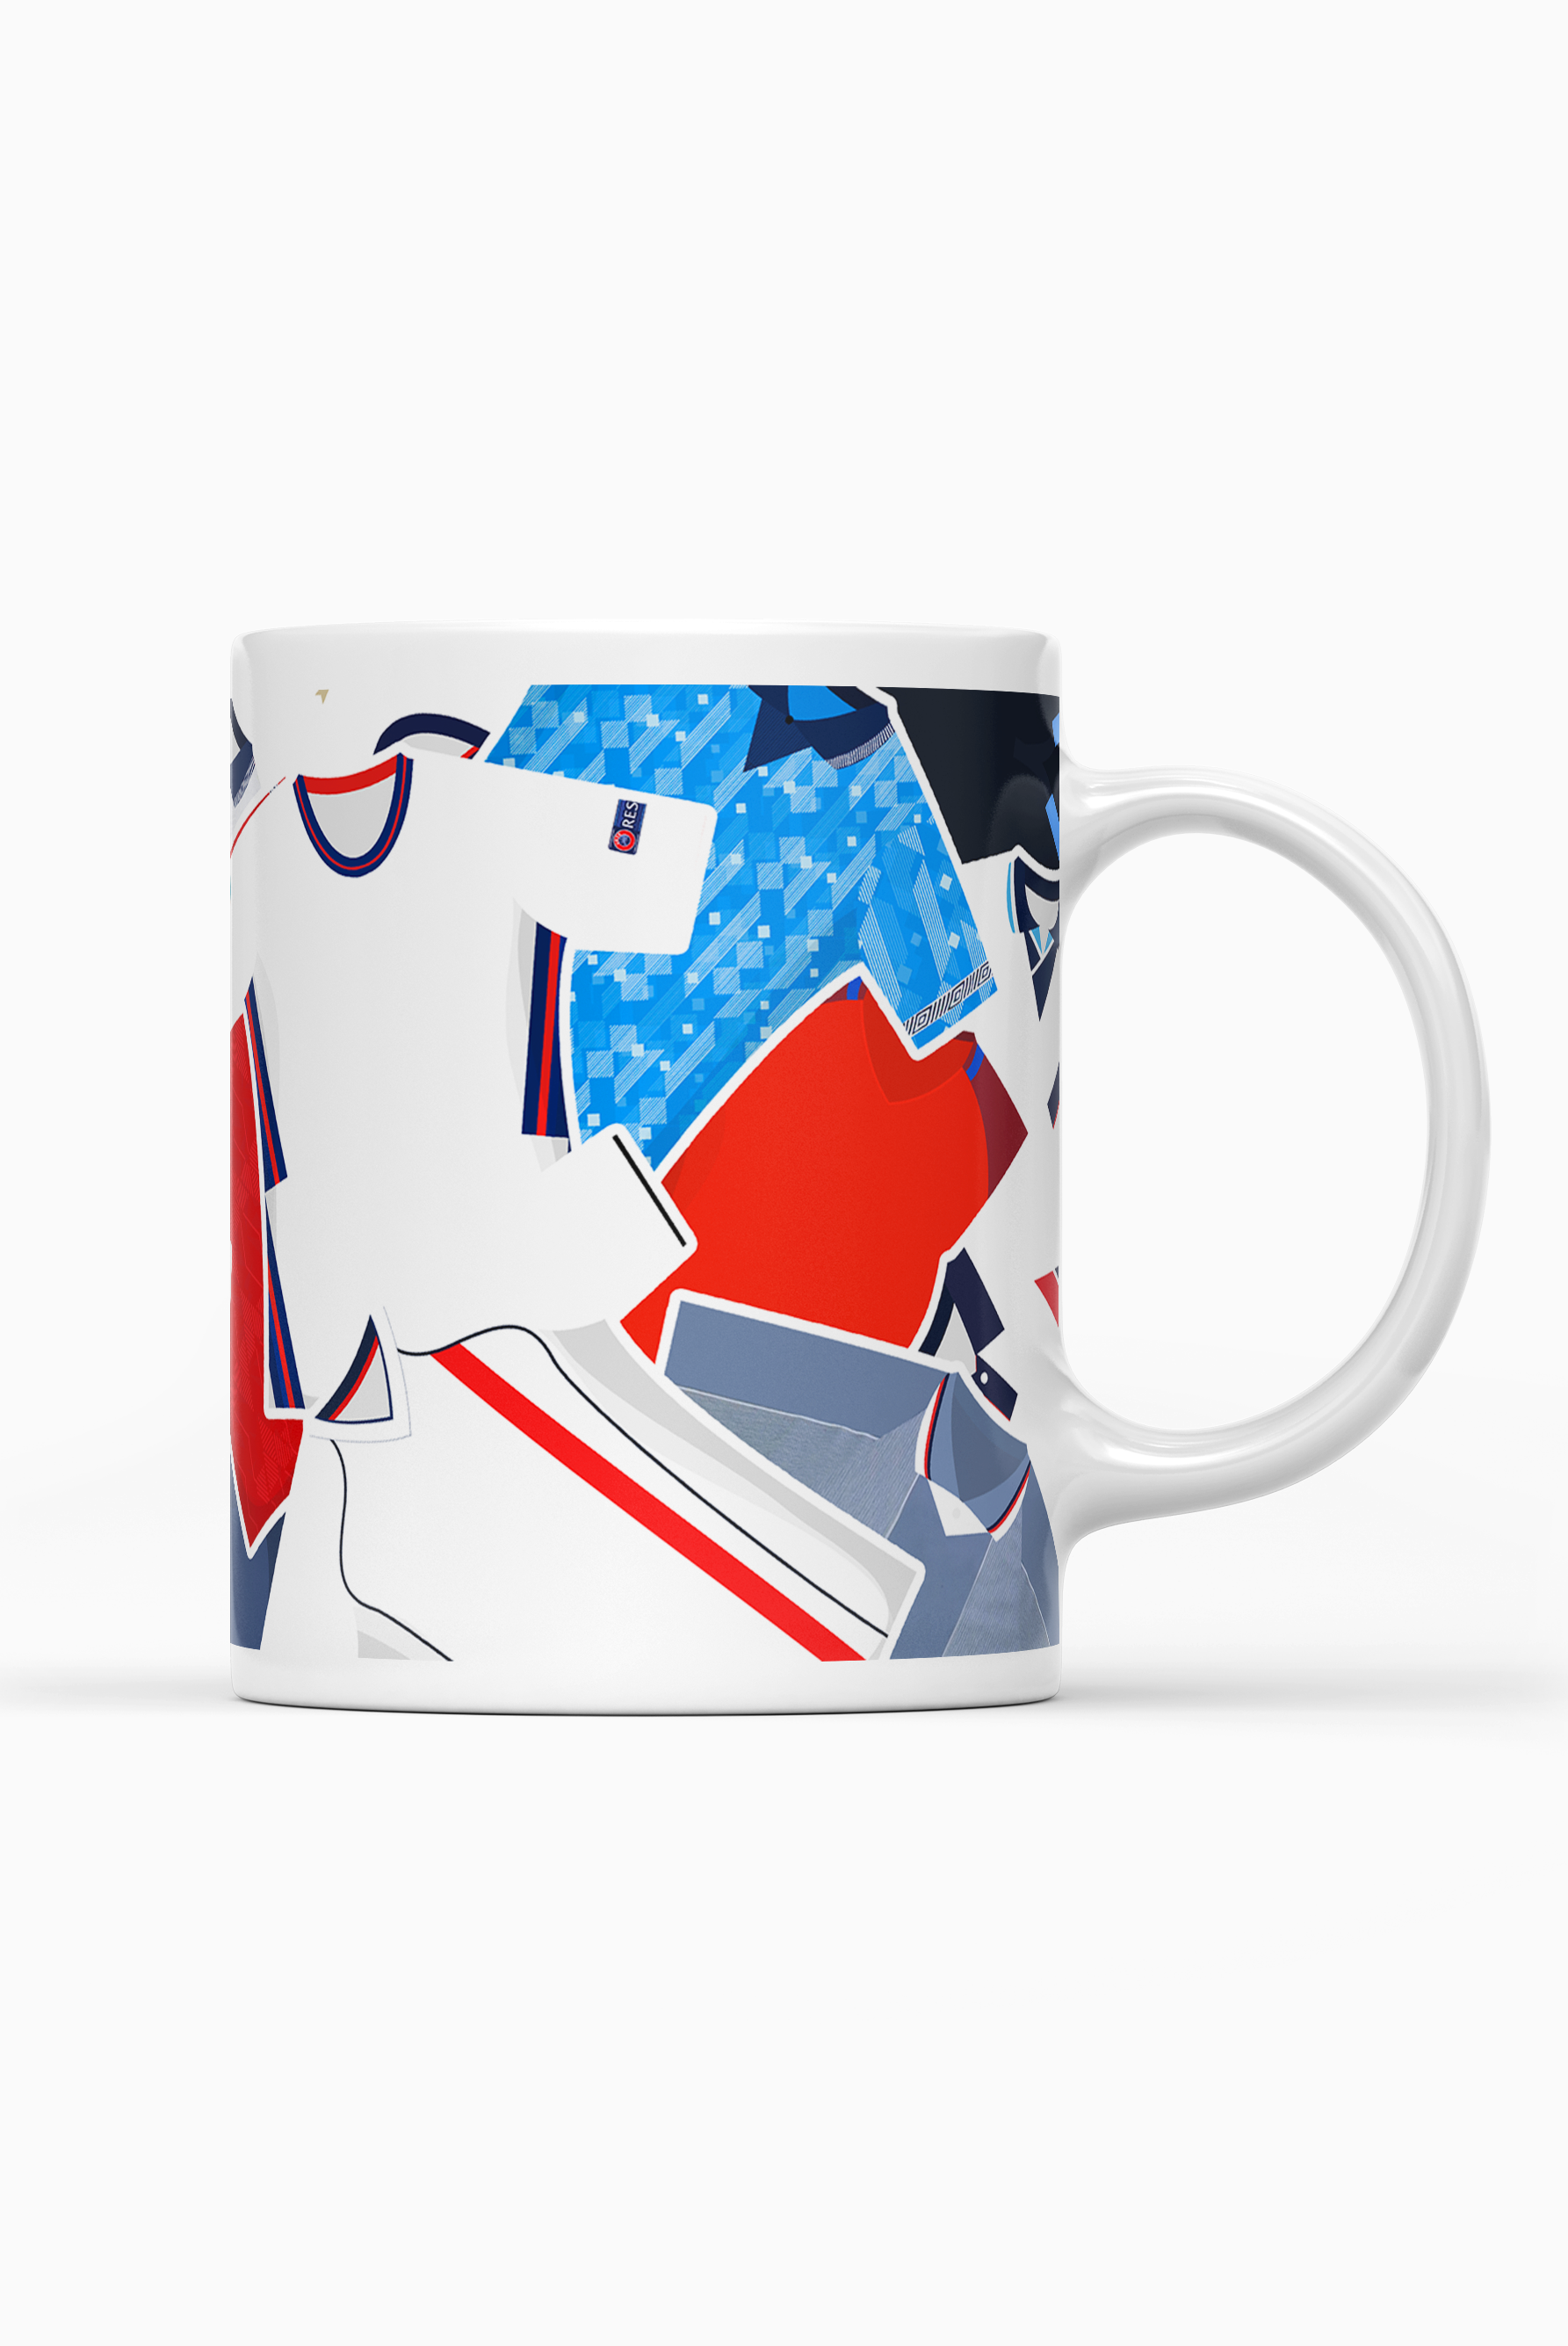 England / Iconic Shirts Mug